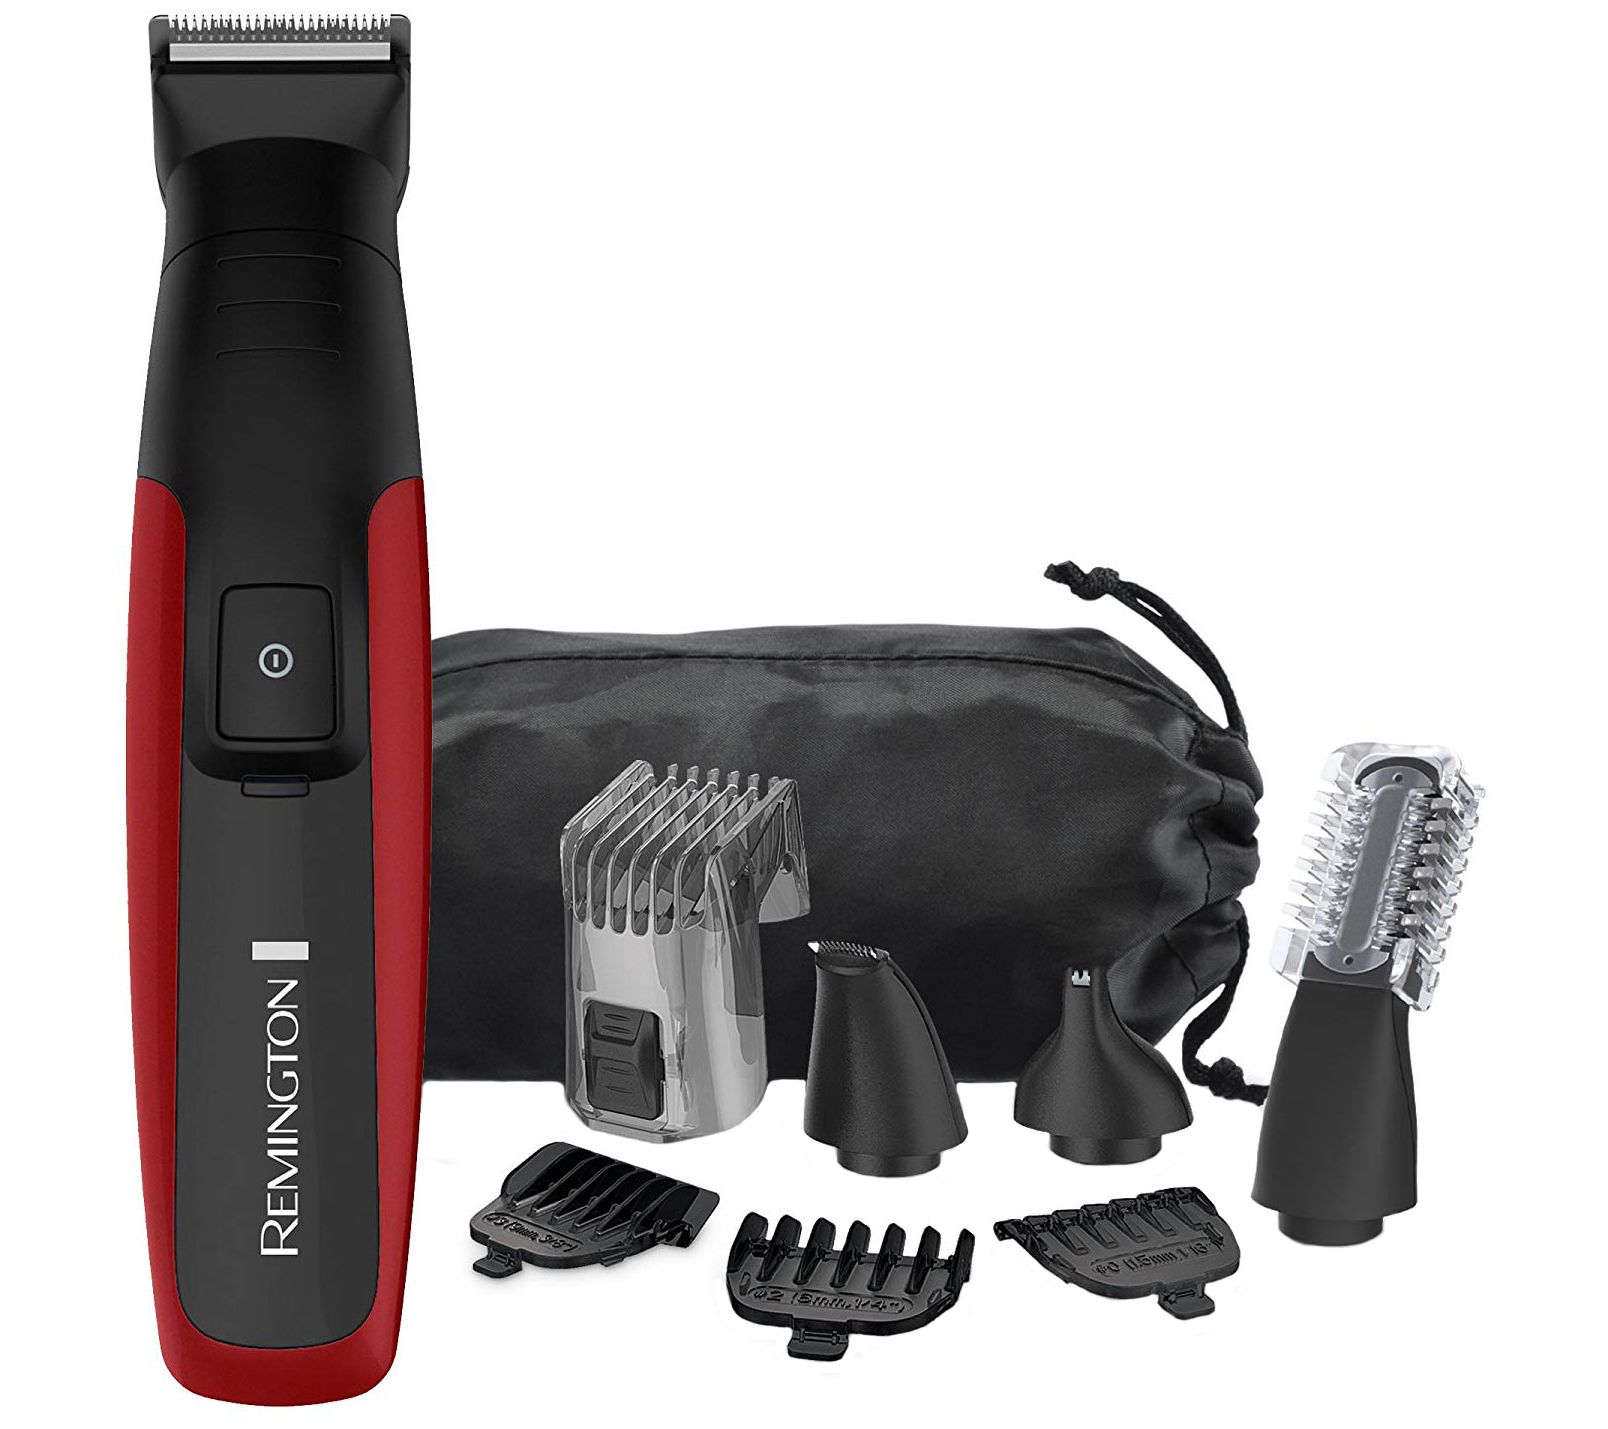 body hair grooming kit